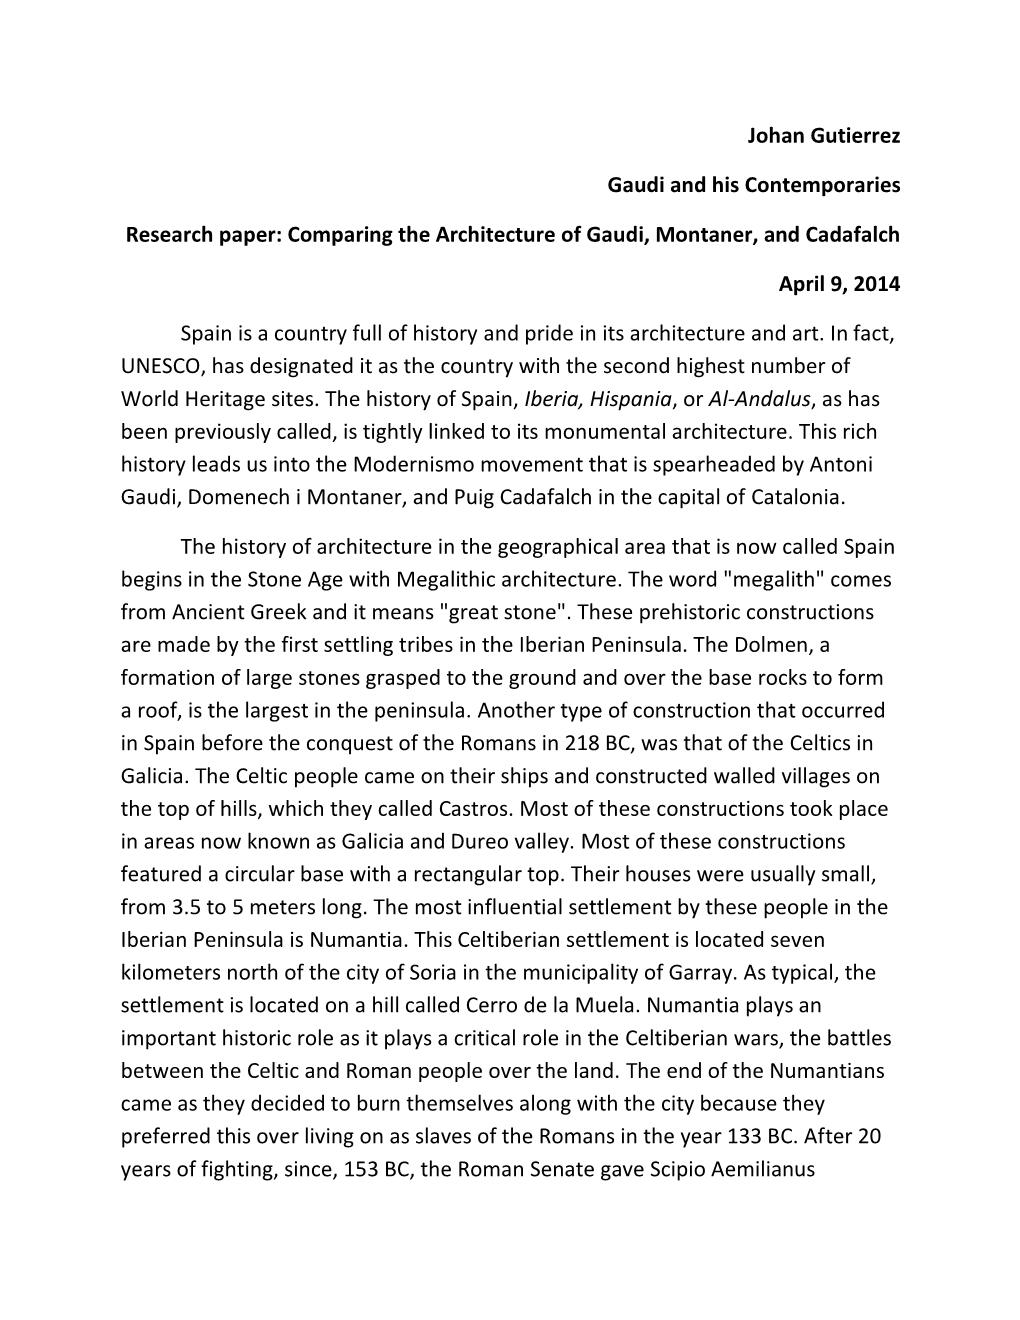 Johan Gutierrez Gaudi and His Contemporaries Research